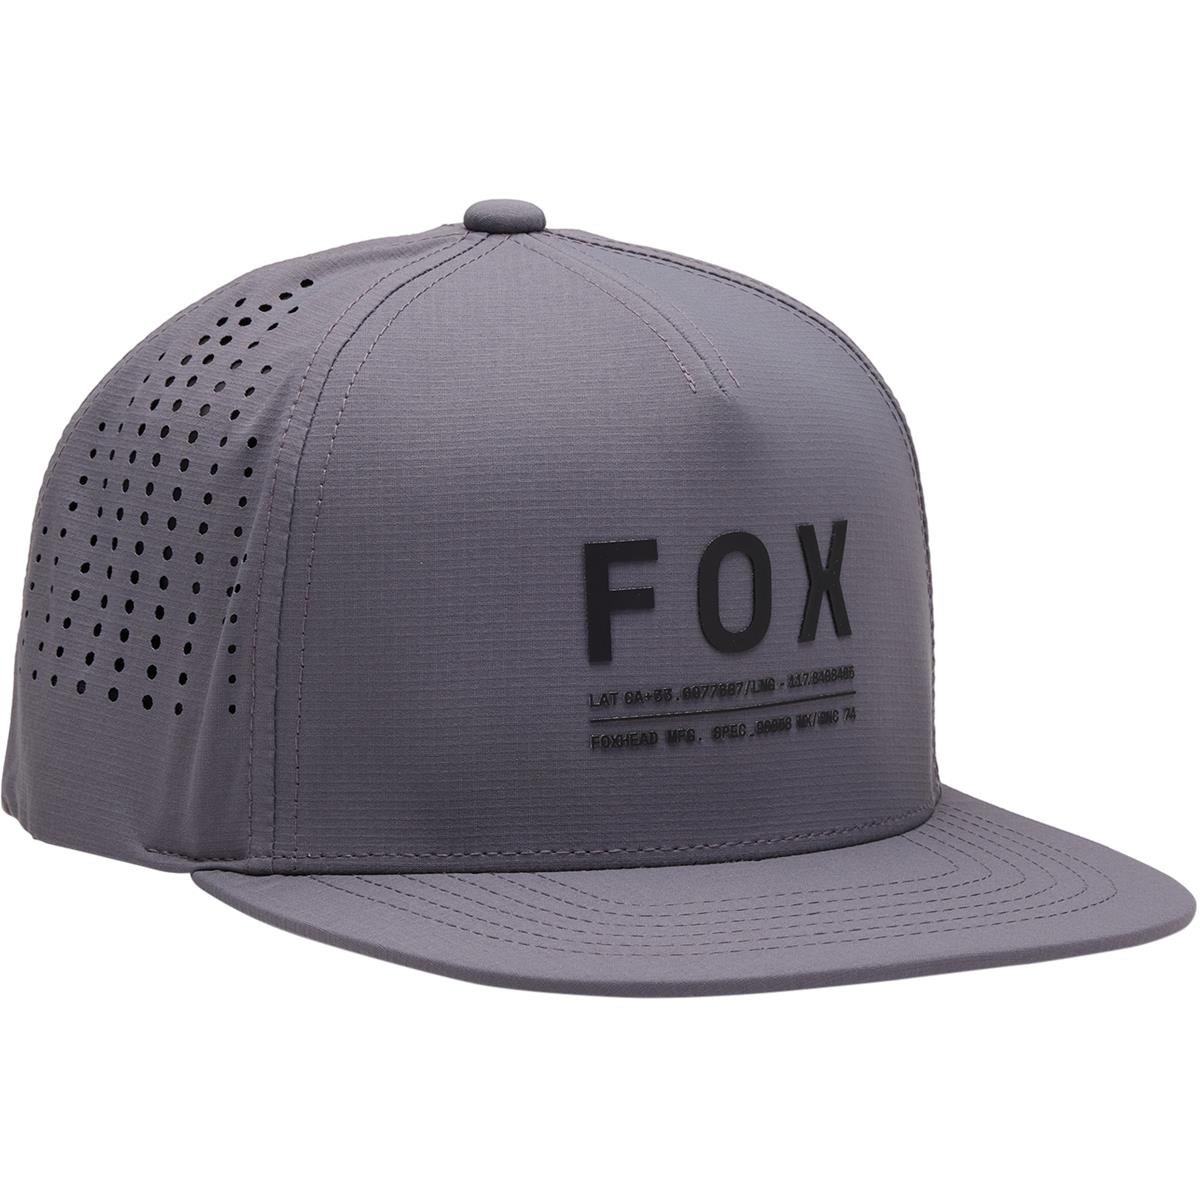 Fox Casquette Snapback Core Non Stop Tech - Acier Gris